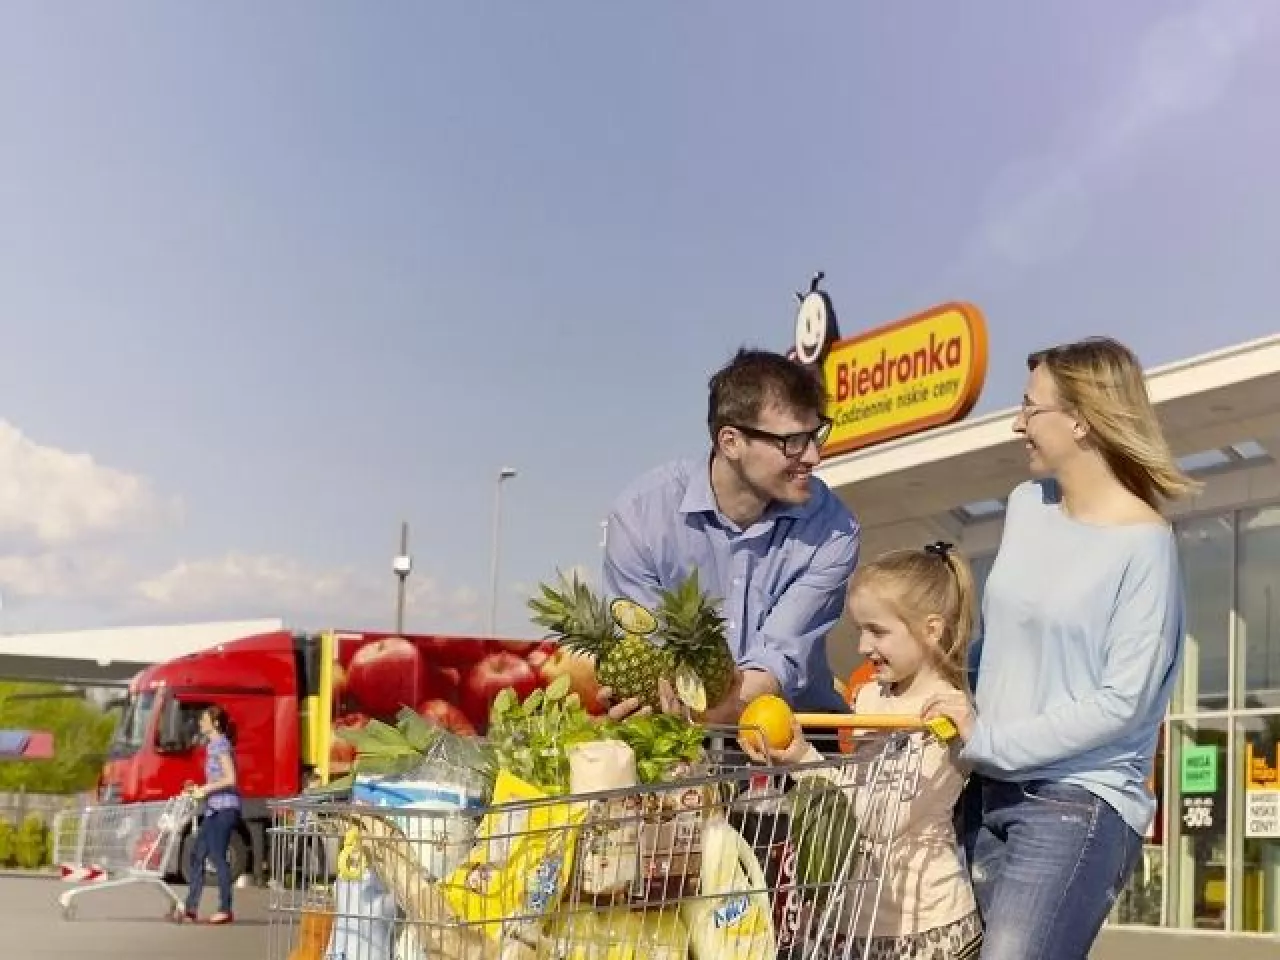 Połowa rodziców wybiera na zakupy spożywcze ten sklep, który odpowiada dzieciom  (fot. Biedronka)